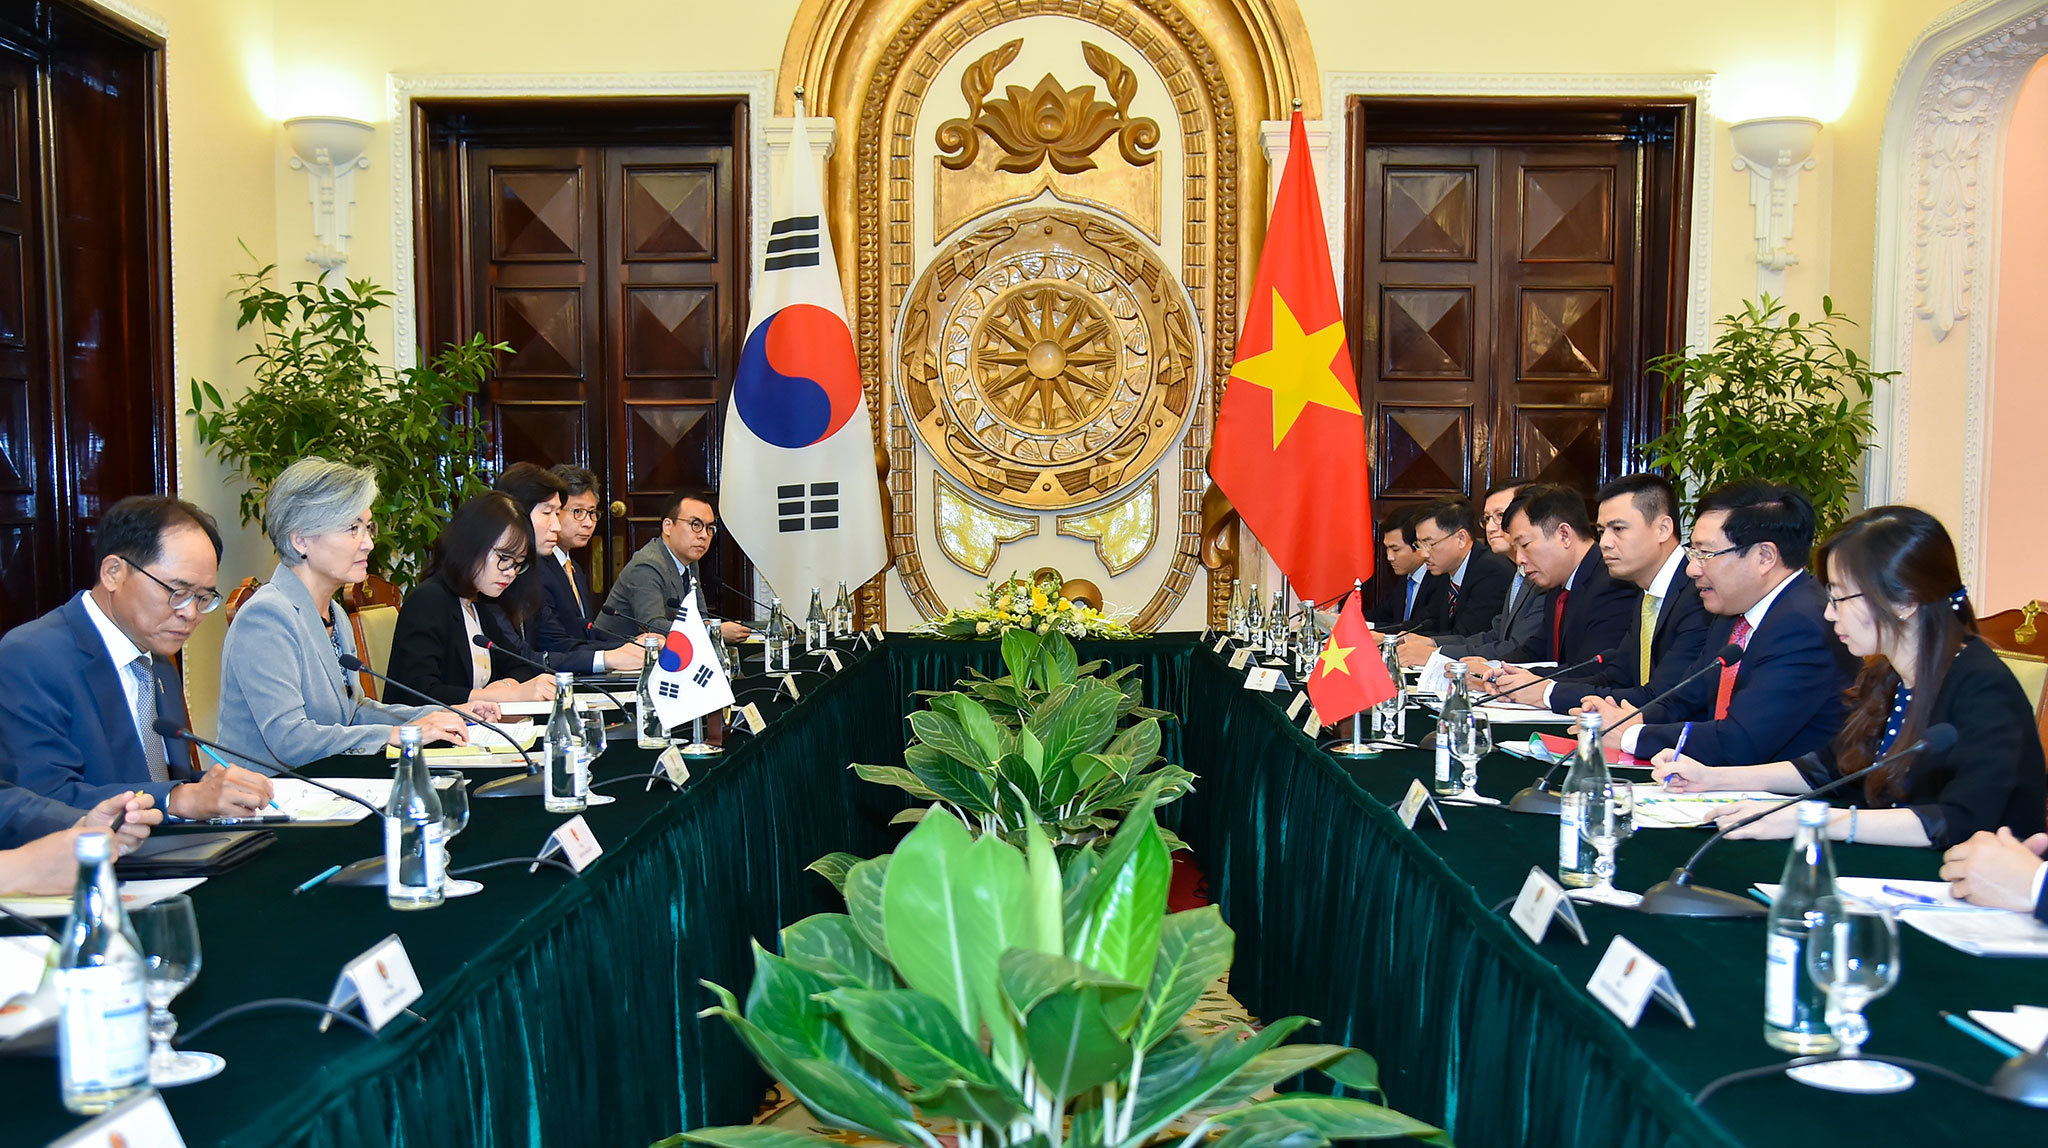 Bộ trưởng nước ngoài đầu tiên thăm Việt Nam kể từ khi bùng phát Covid-19